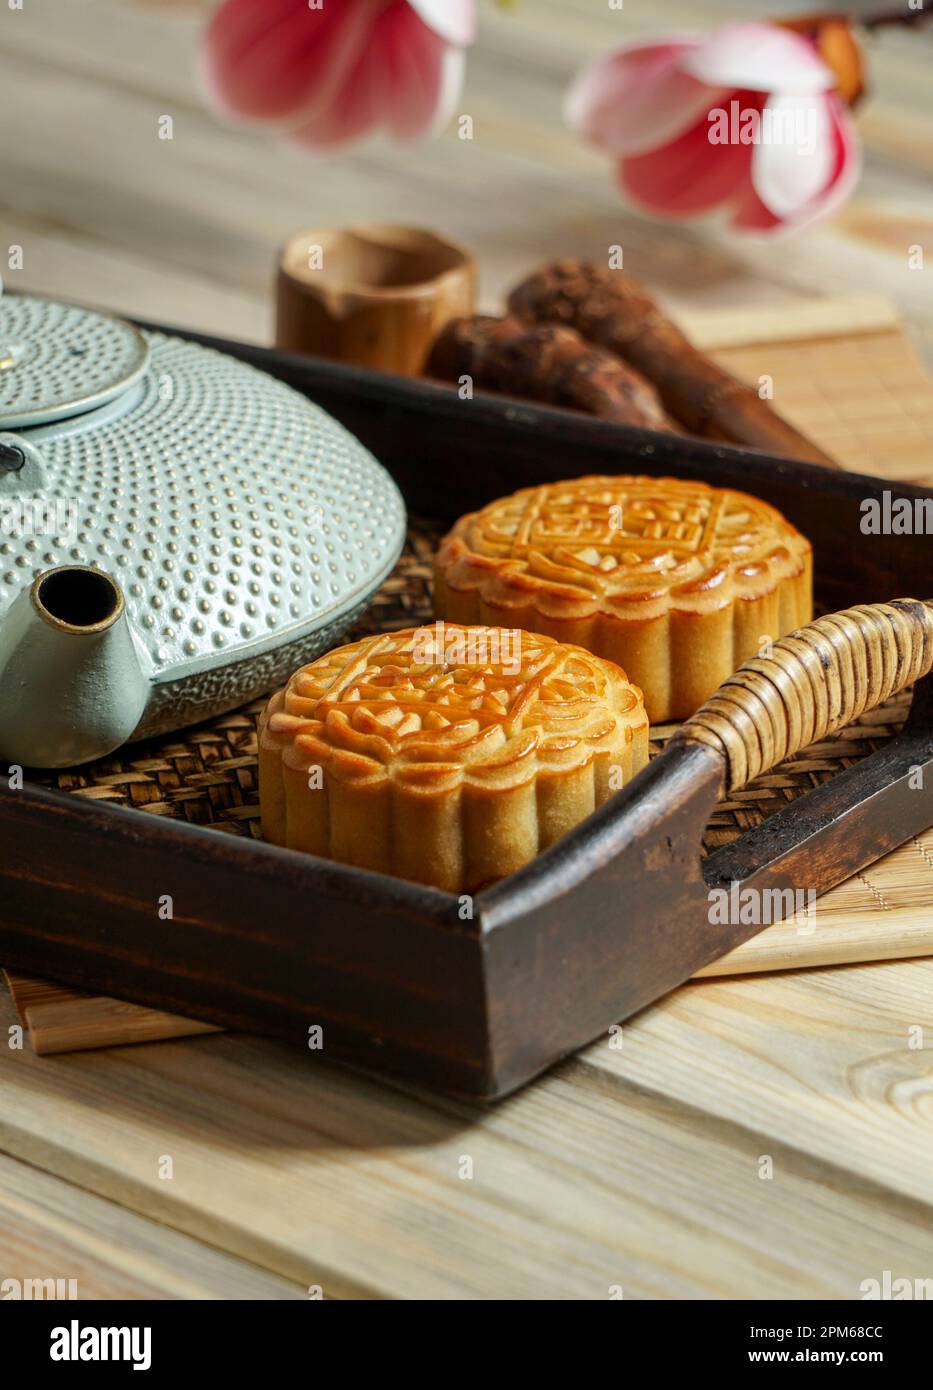 Mooncake para el Festival de mediados de otoño, concepto de comida china festiva tradicional en una bandeja de madera asiática con tetera Foto de stock